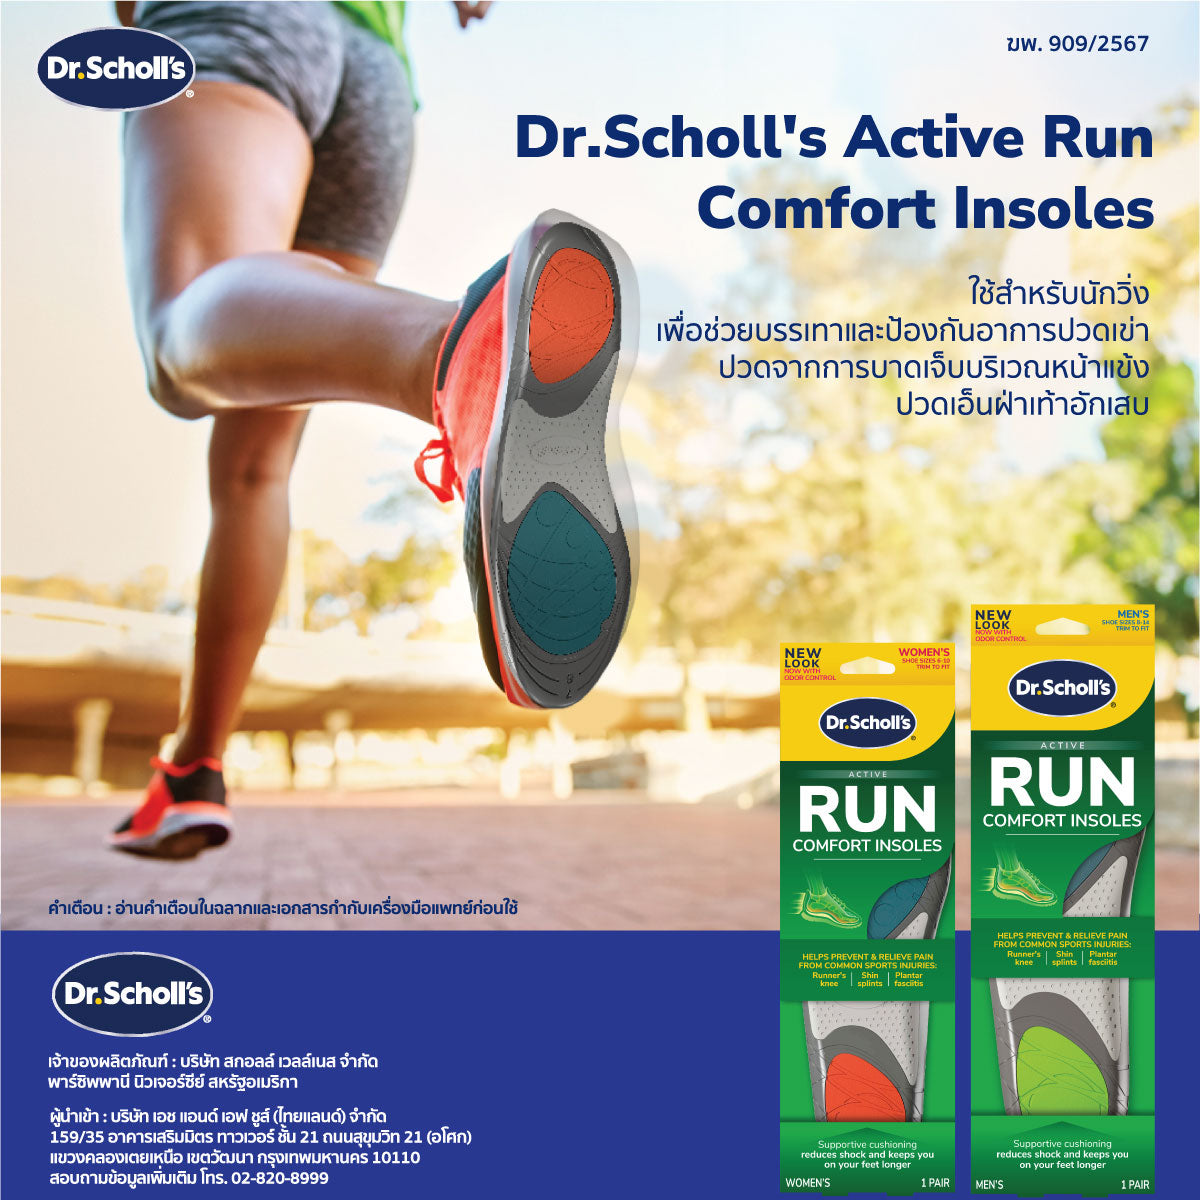 Dr.Scholl's Active Run Comfort Insoles